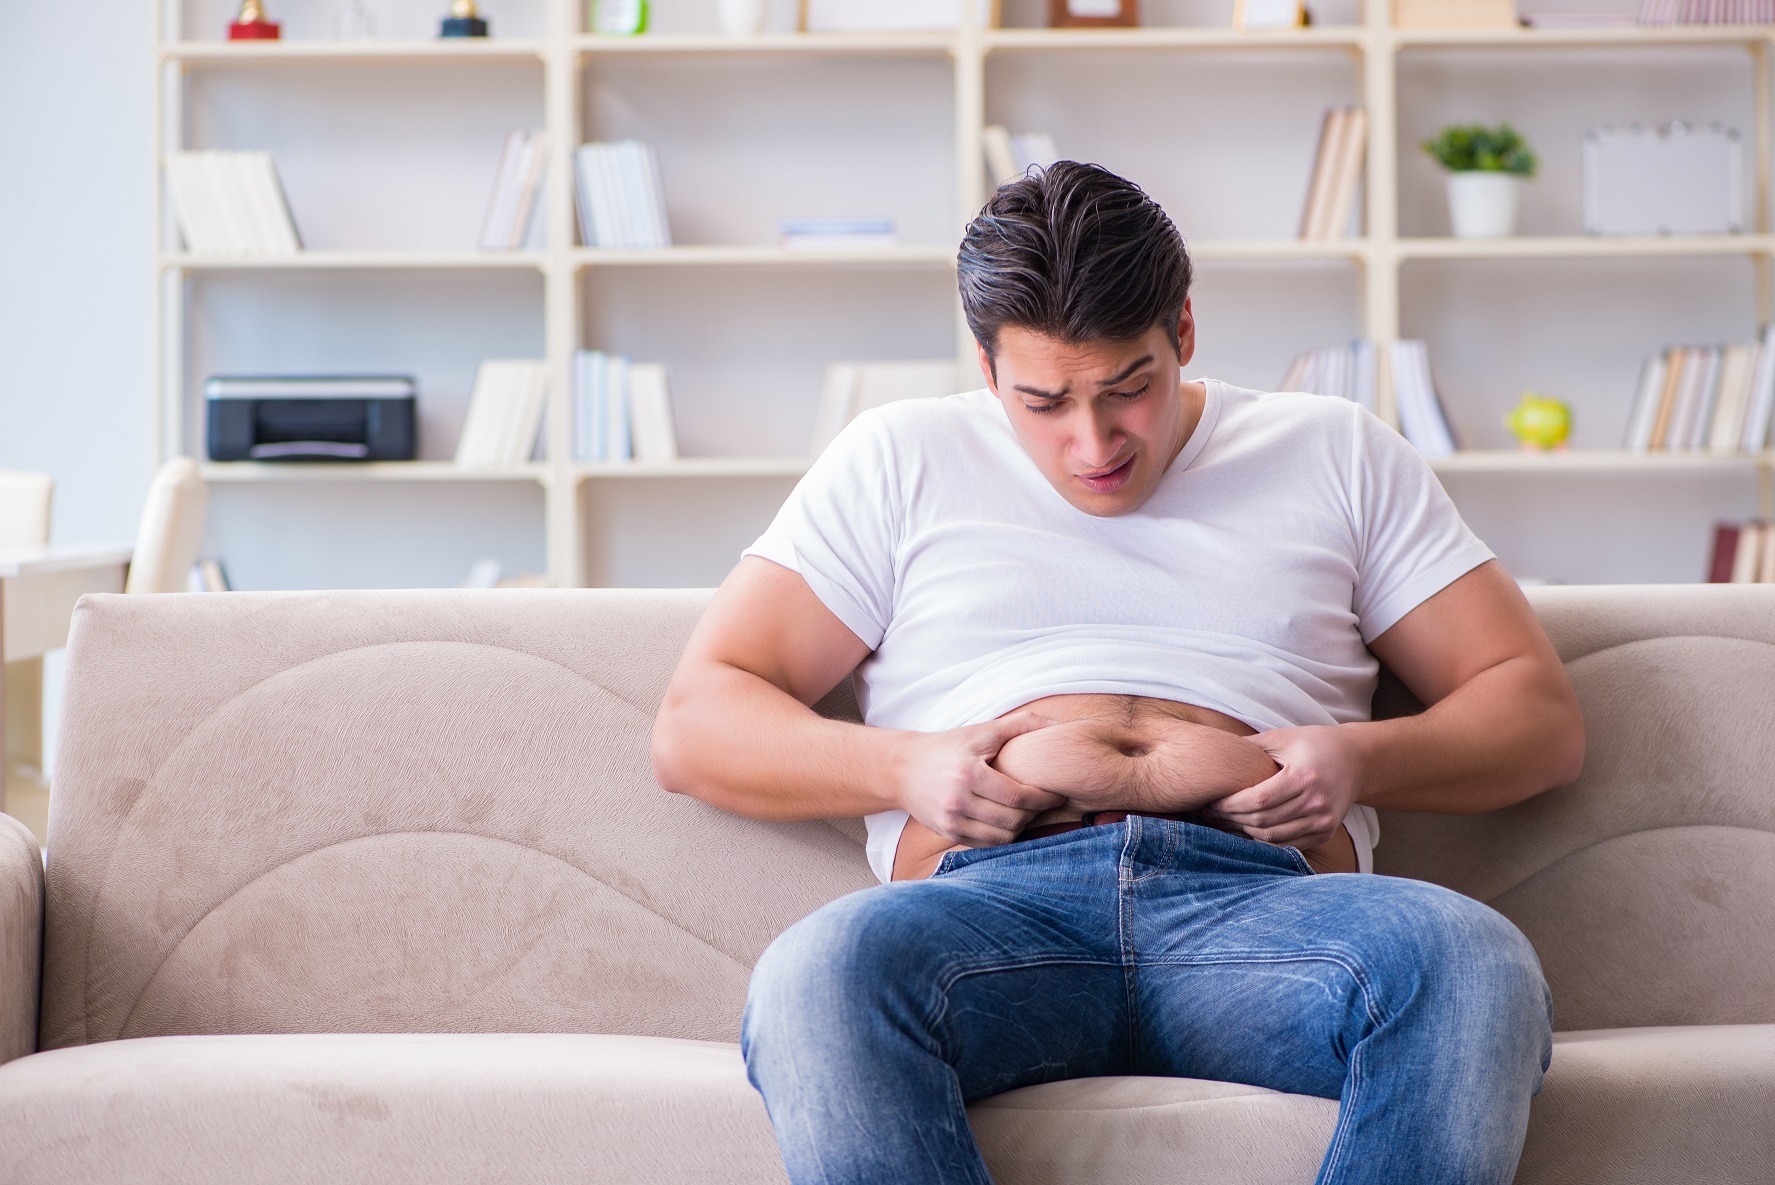 Motiv serios să scapi de burtică: grăsimea abdominală afectează memoria